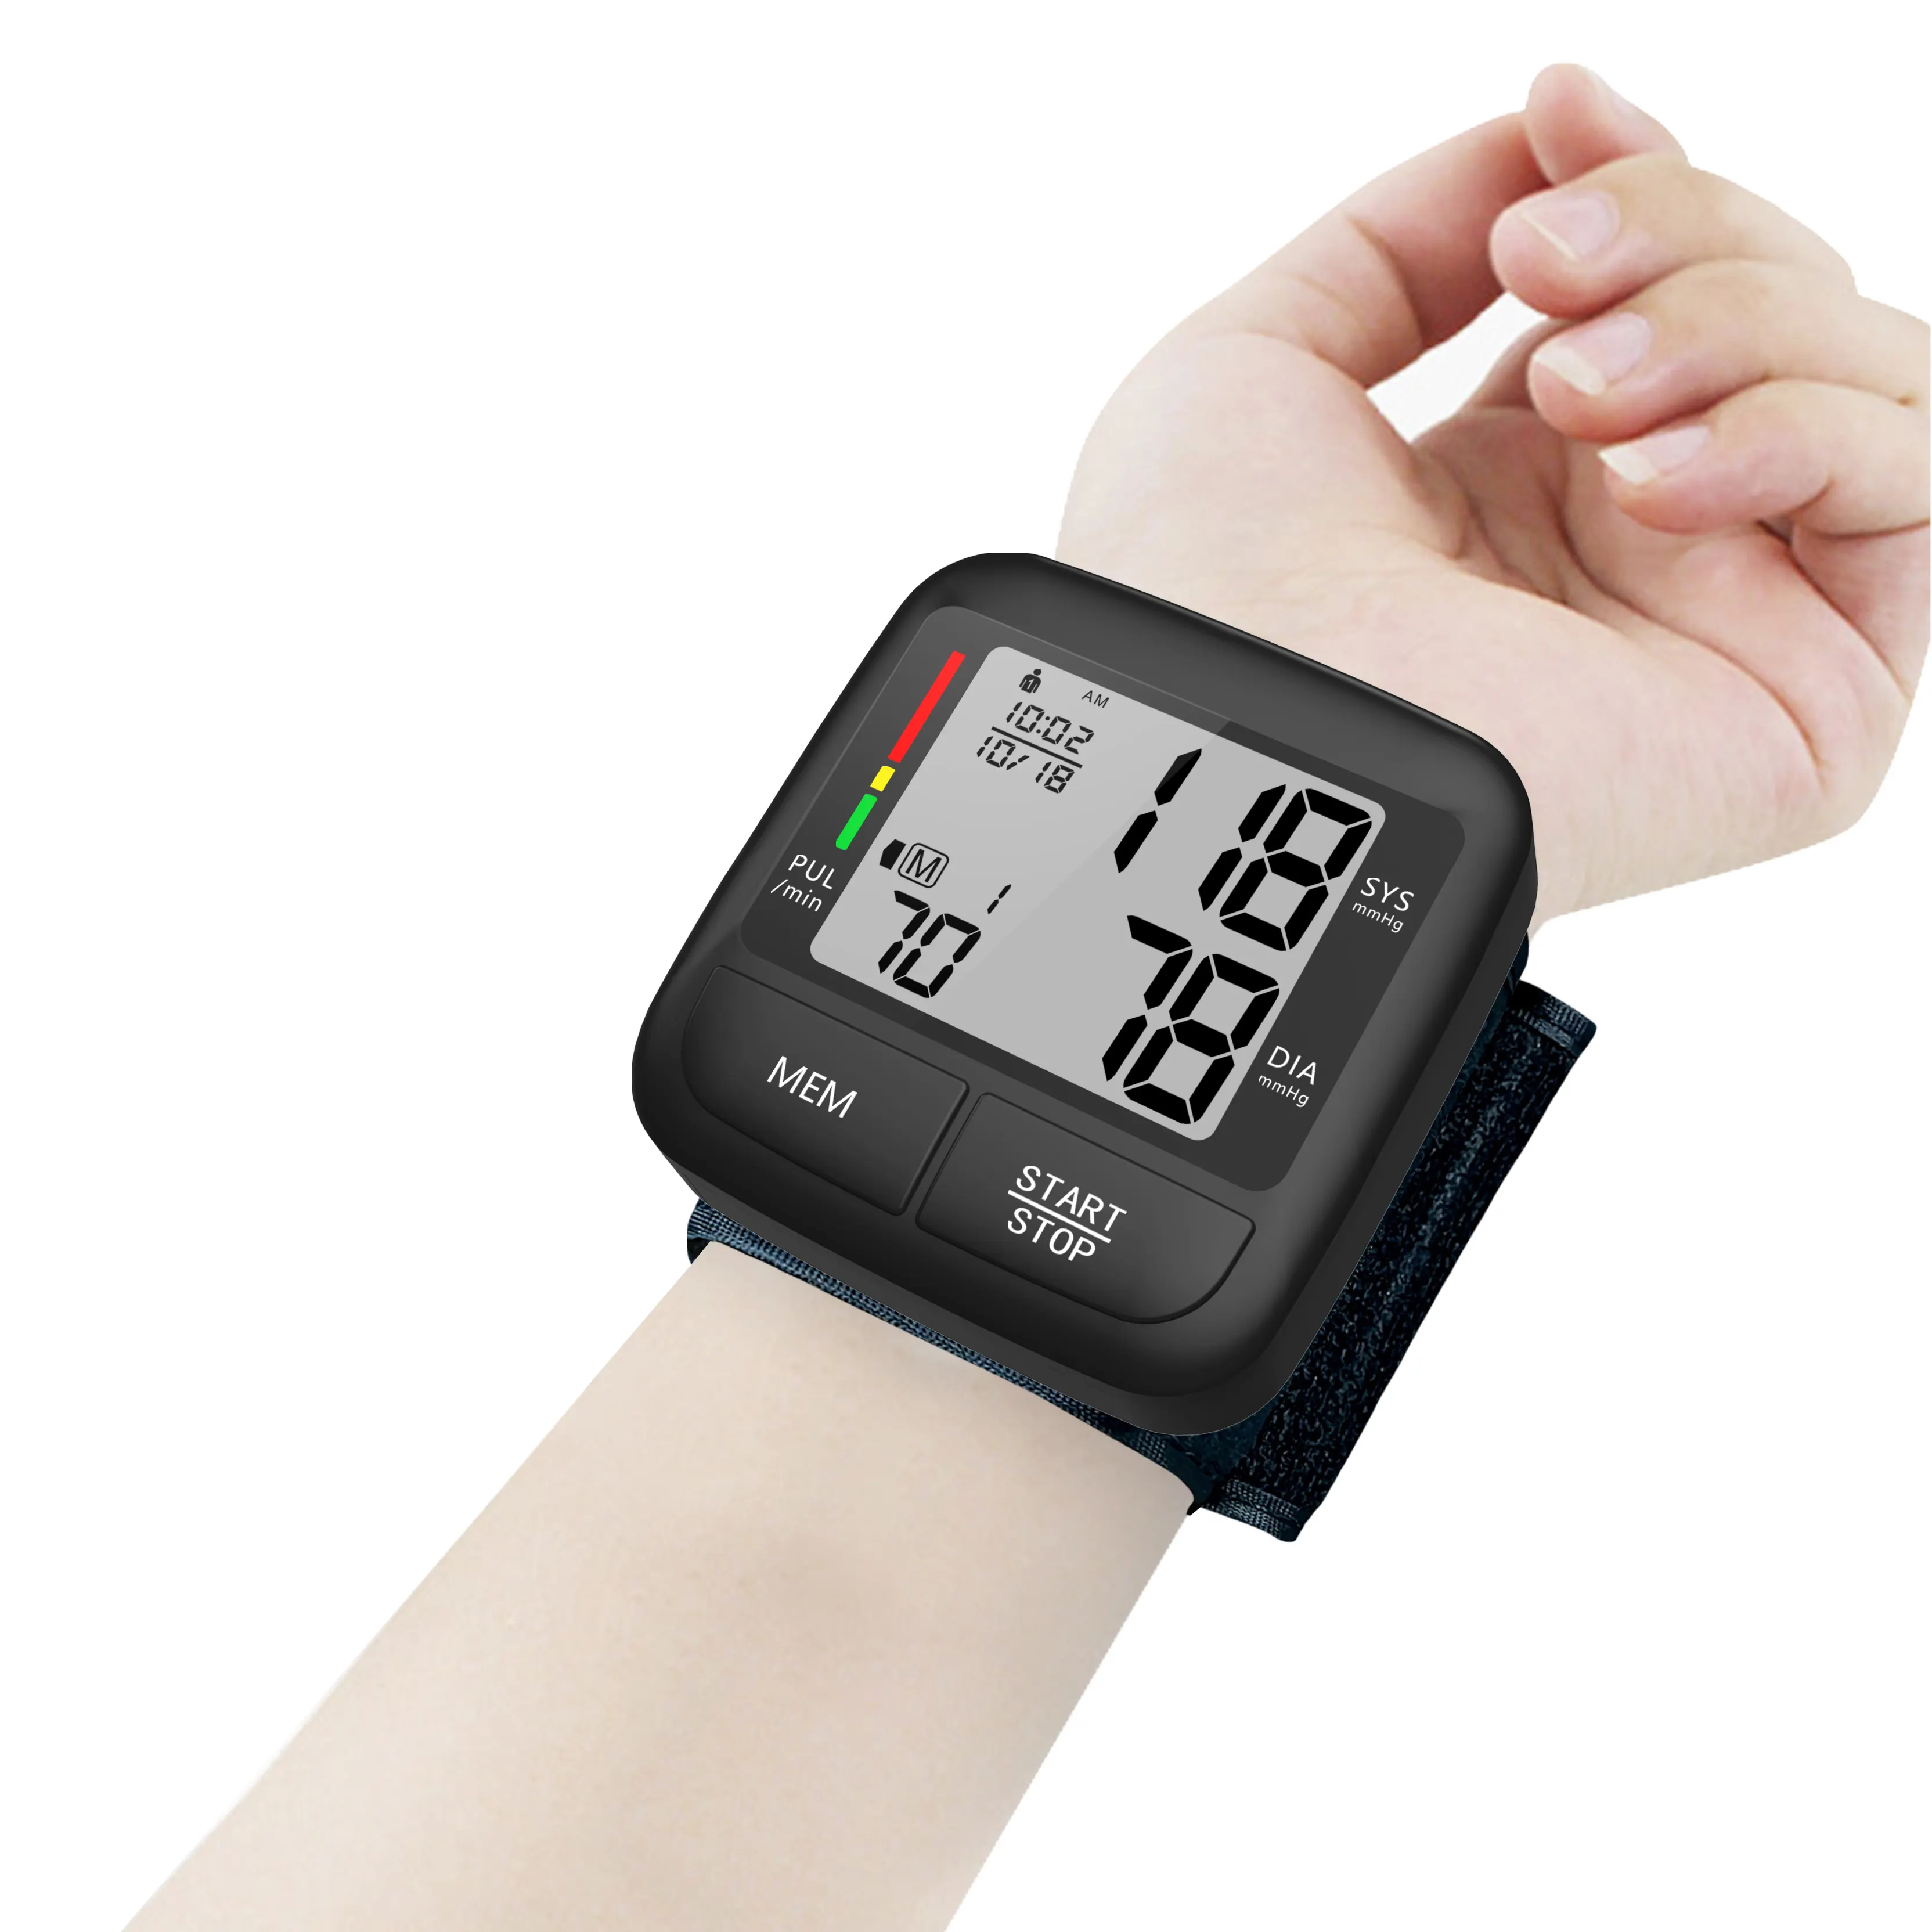 Neueste kaufen tragbare medizinische automatische Blutdruck messgerät LCD-Display Digital Wrist Electronic Bp Maschine Blutdruck messgerät